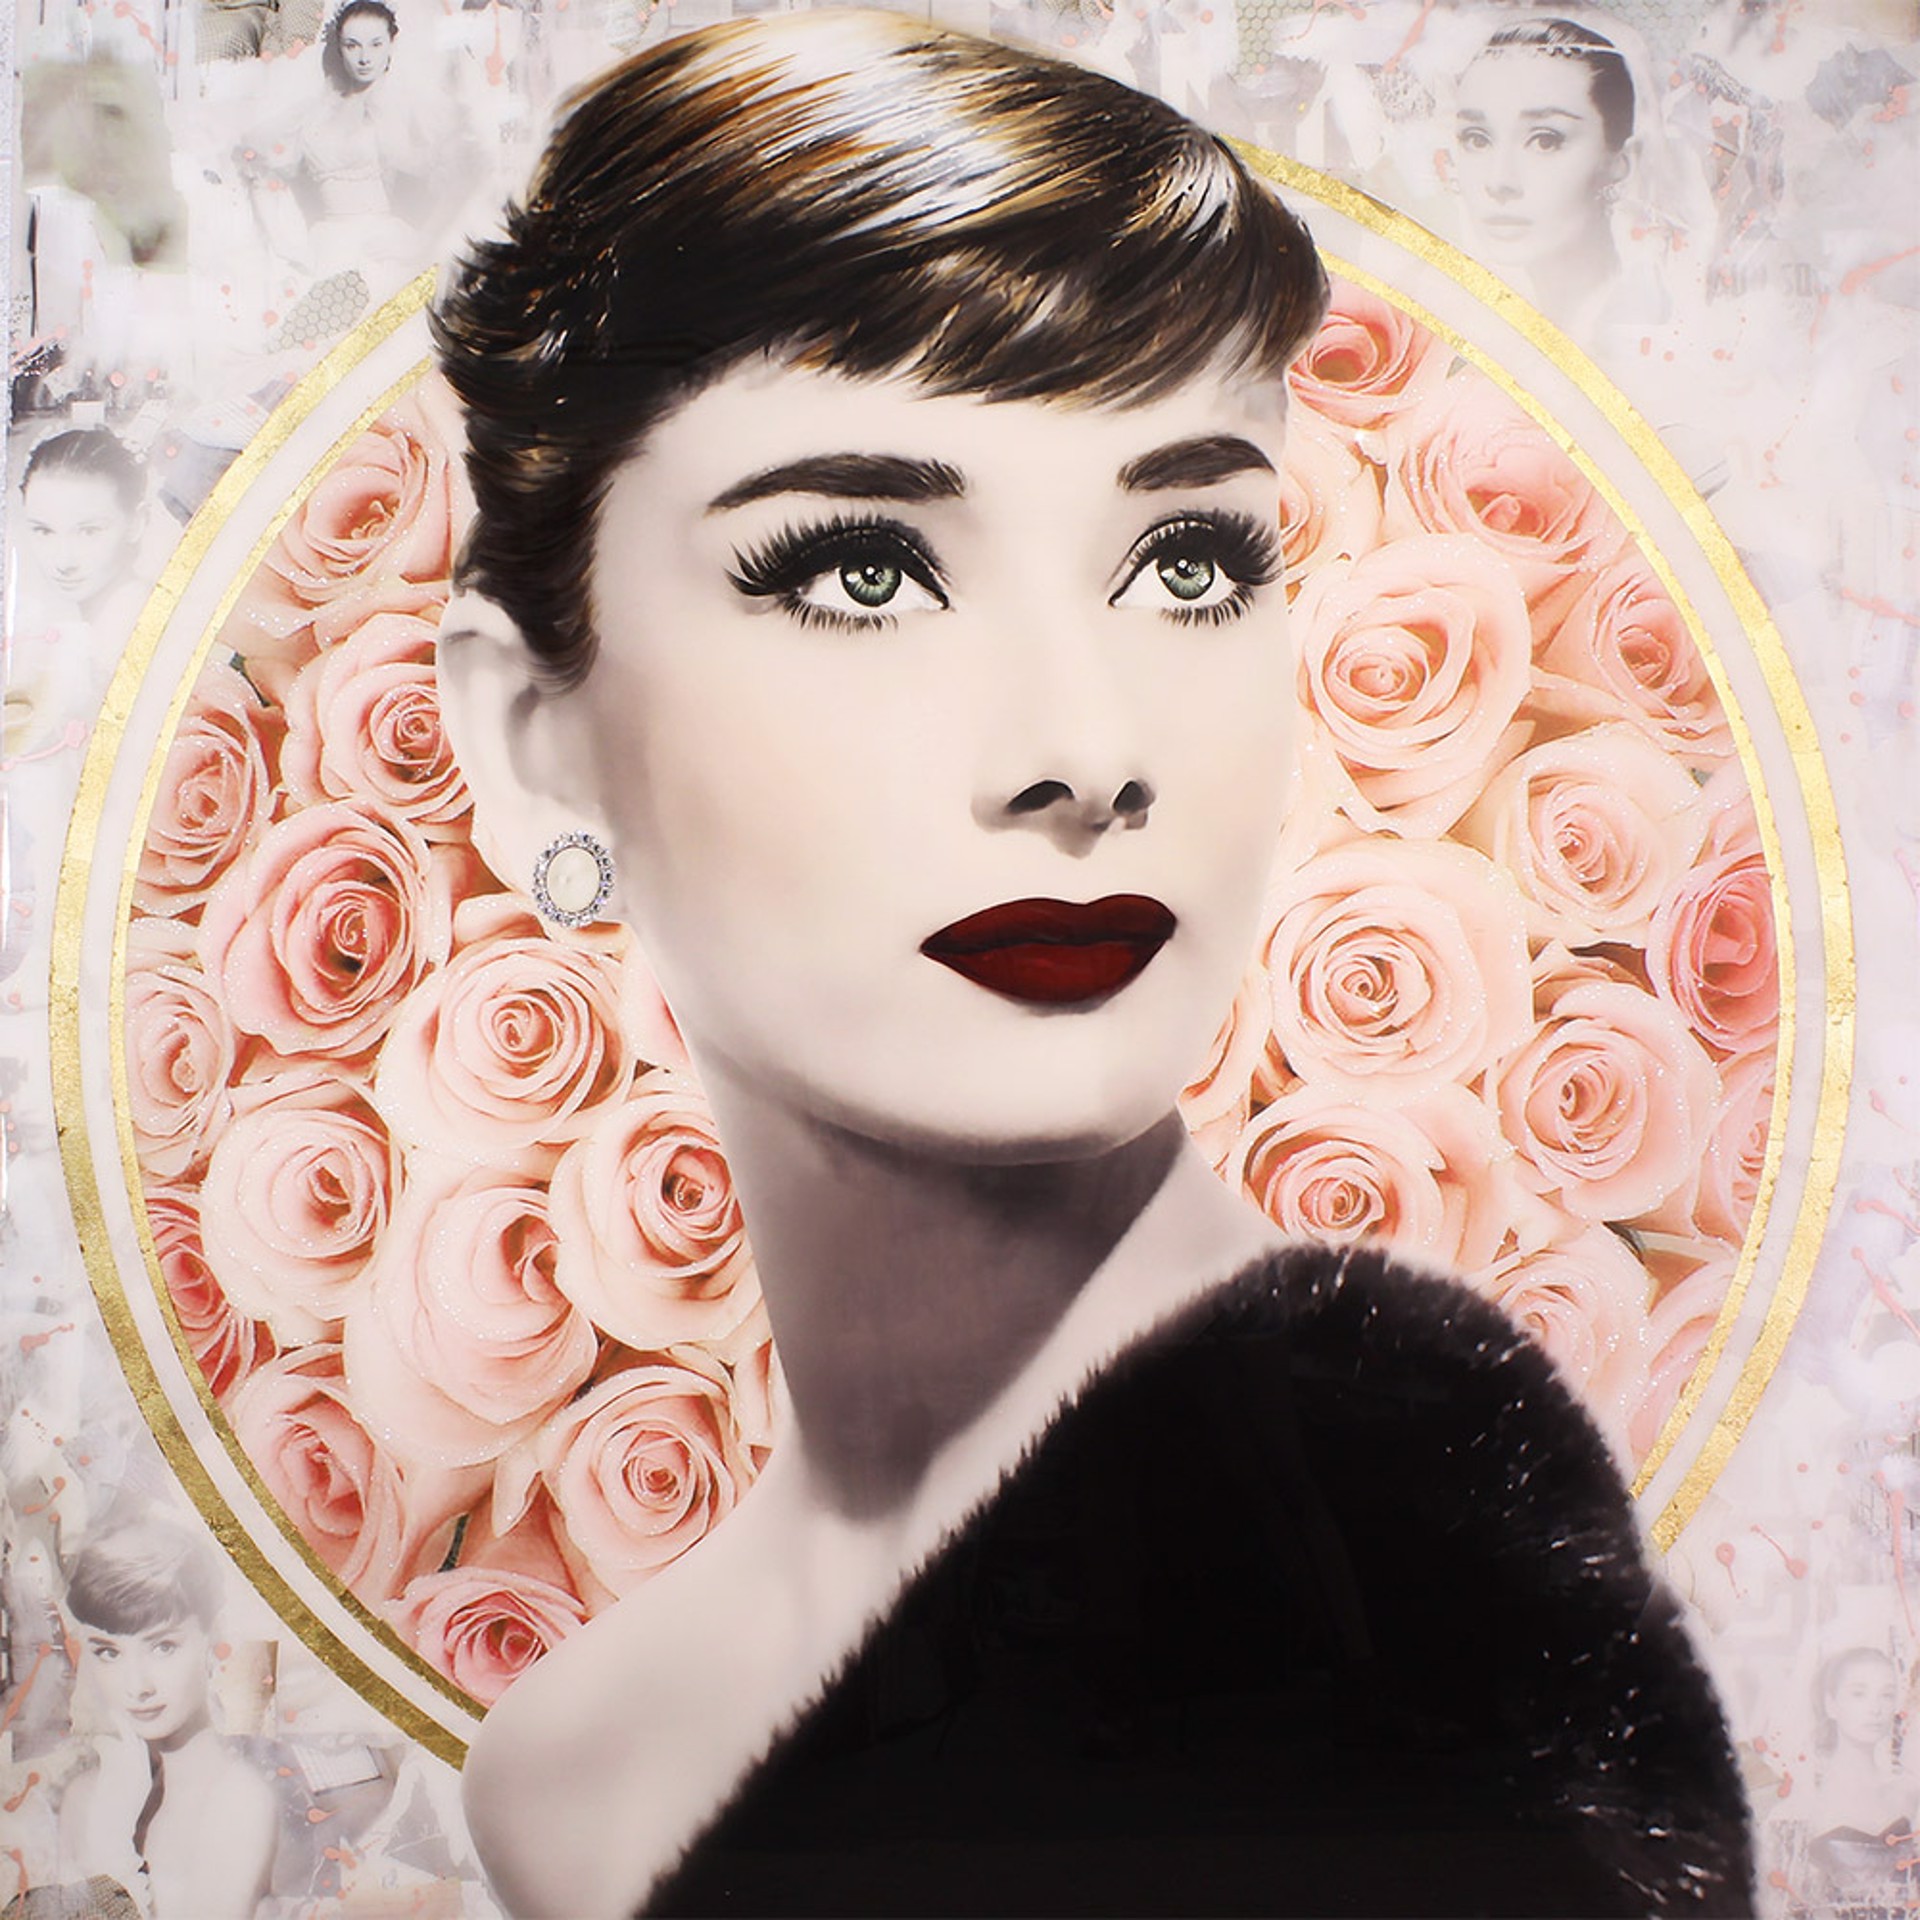 Audrey with Roses by De Von